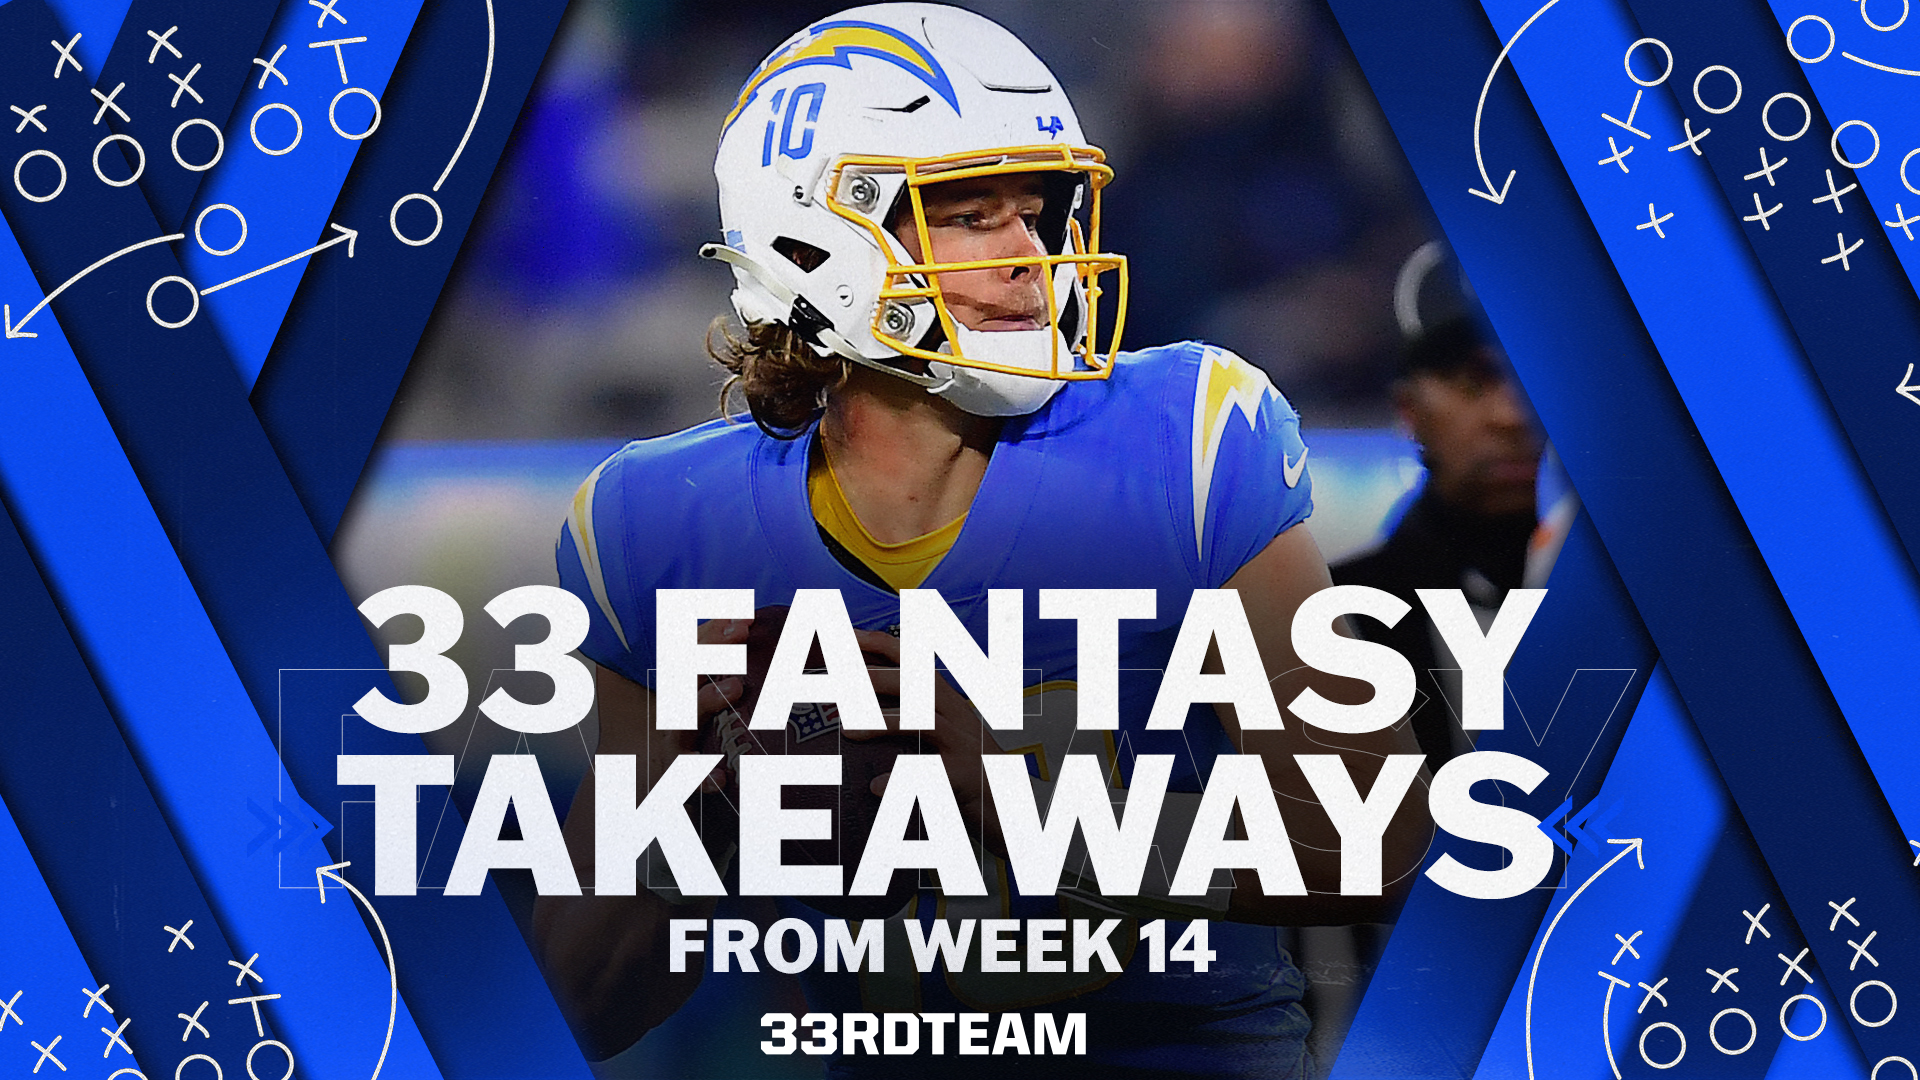 fantasy takeaways from week 14